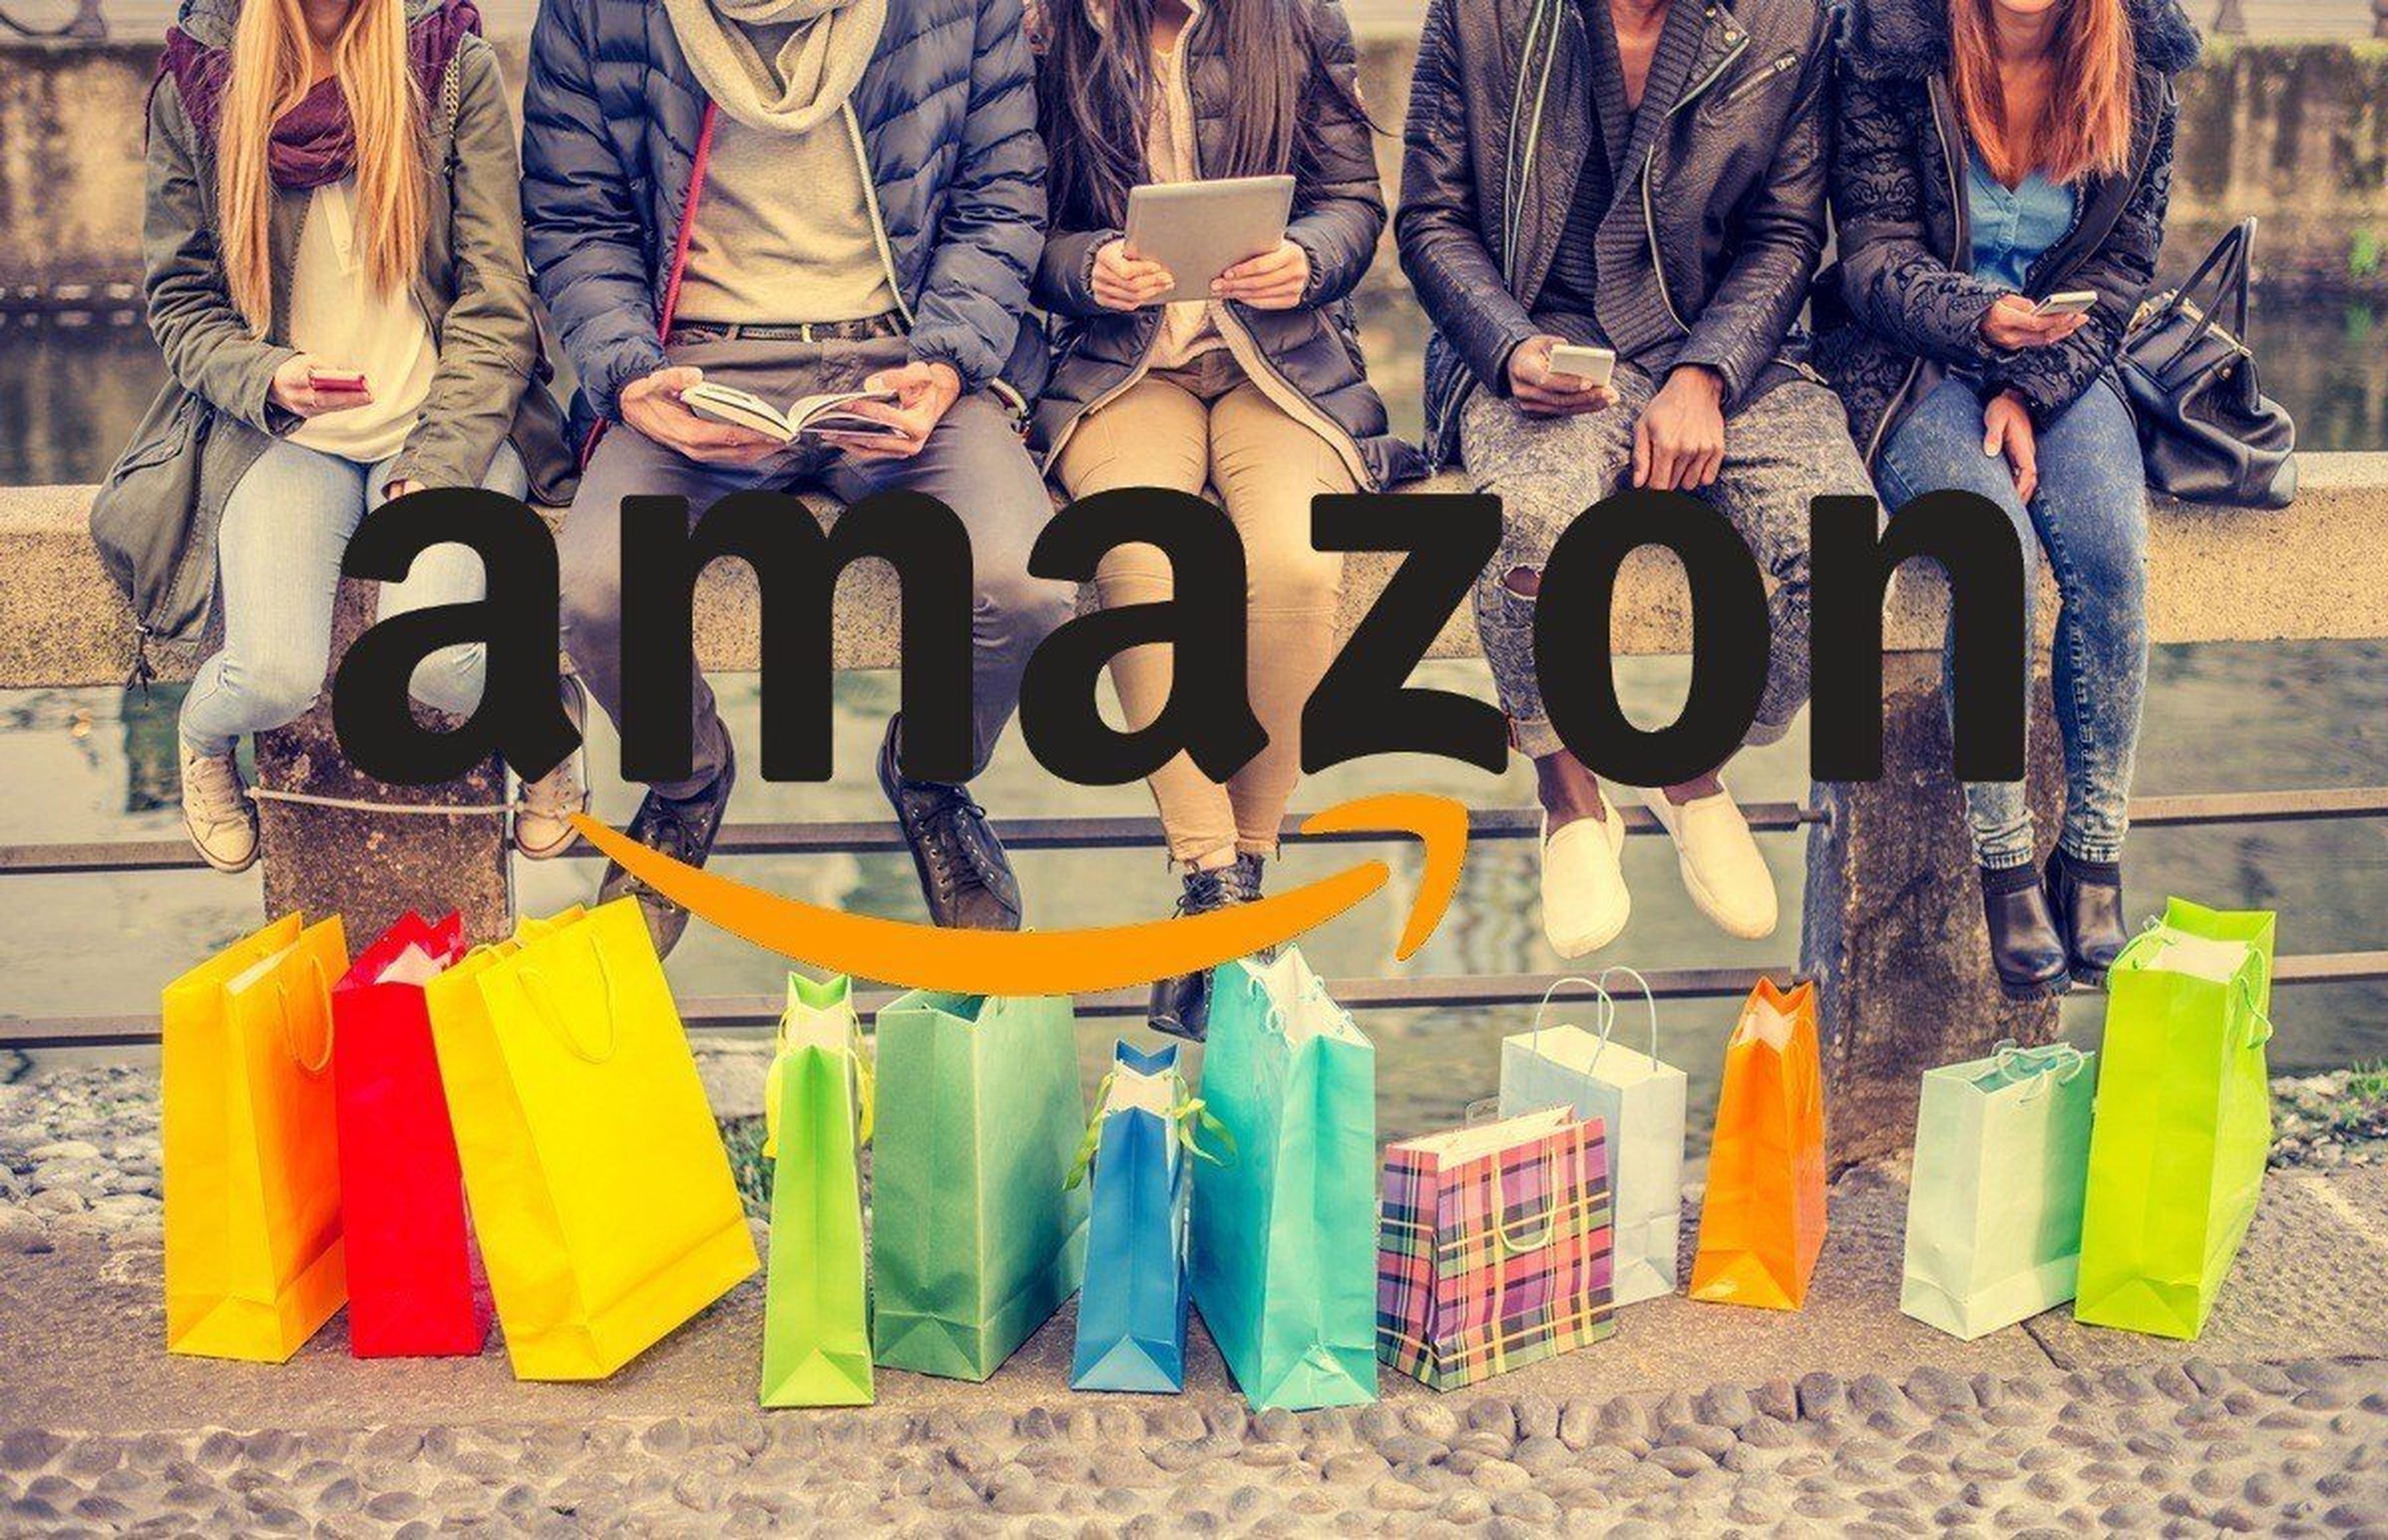 Cómo comprar más barato en Amazon